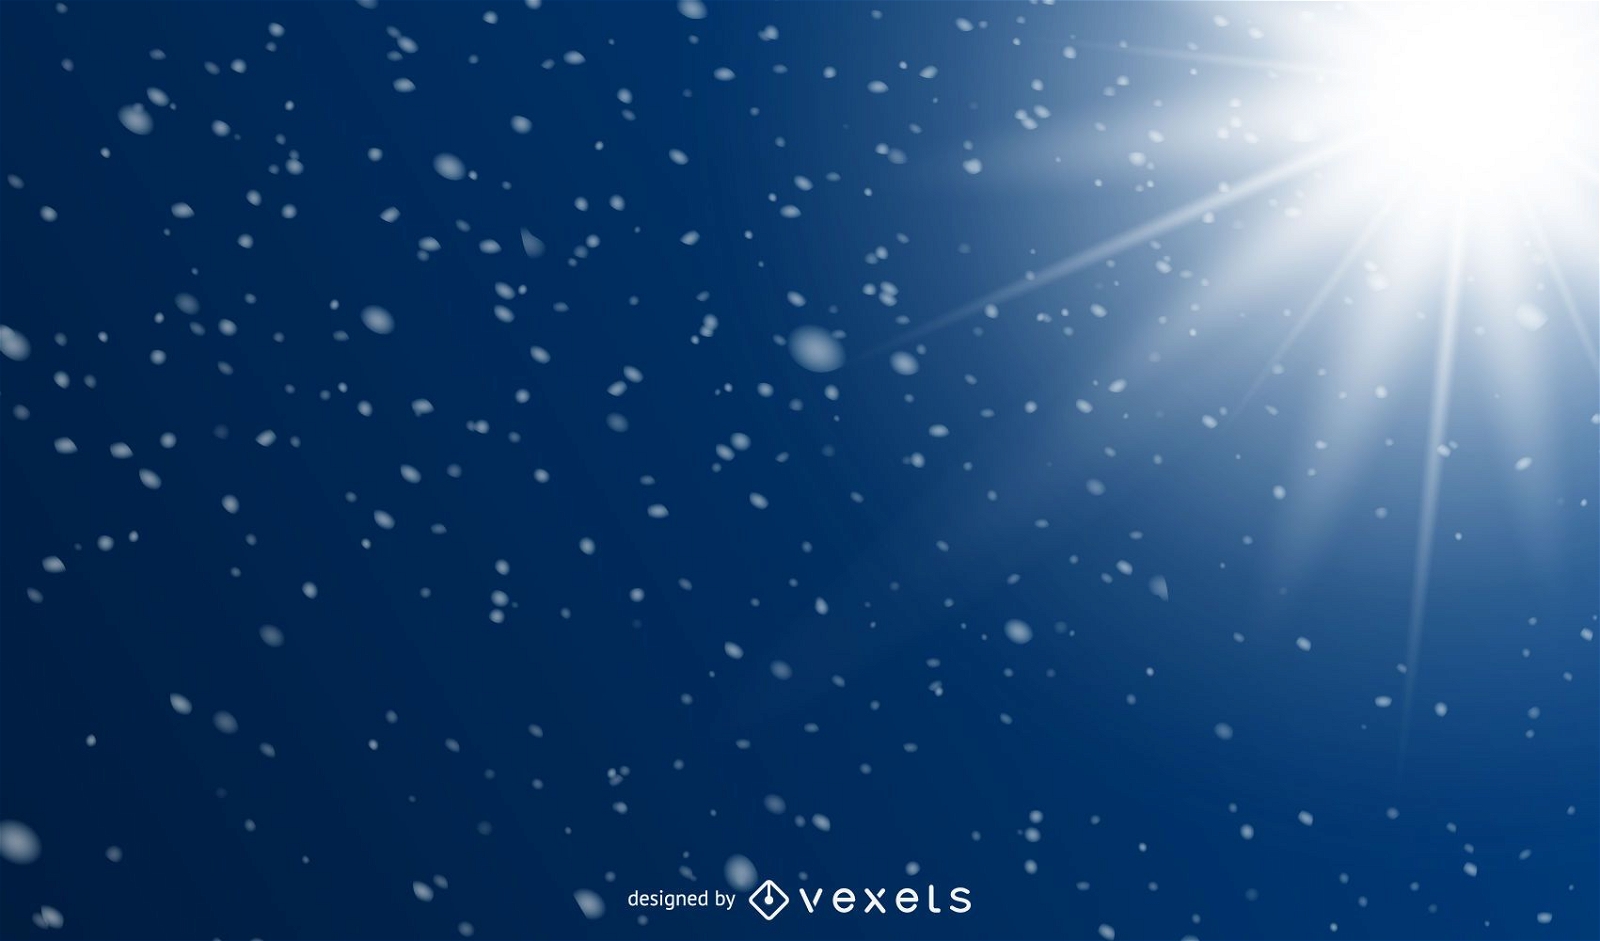 Sun Glares & Snowy Sparkles Blue Hintergrund